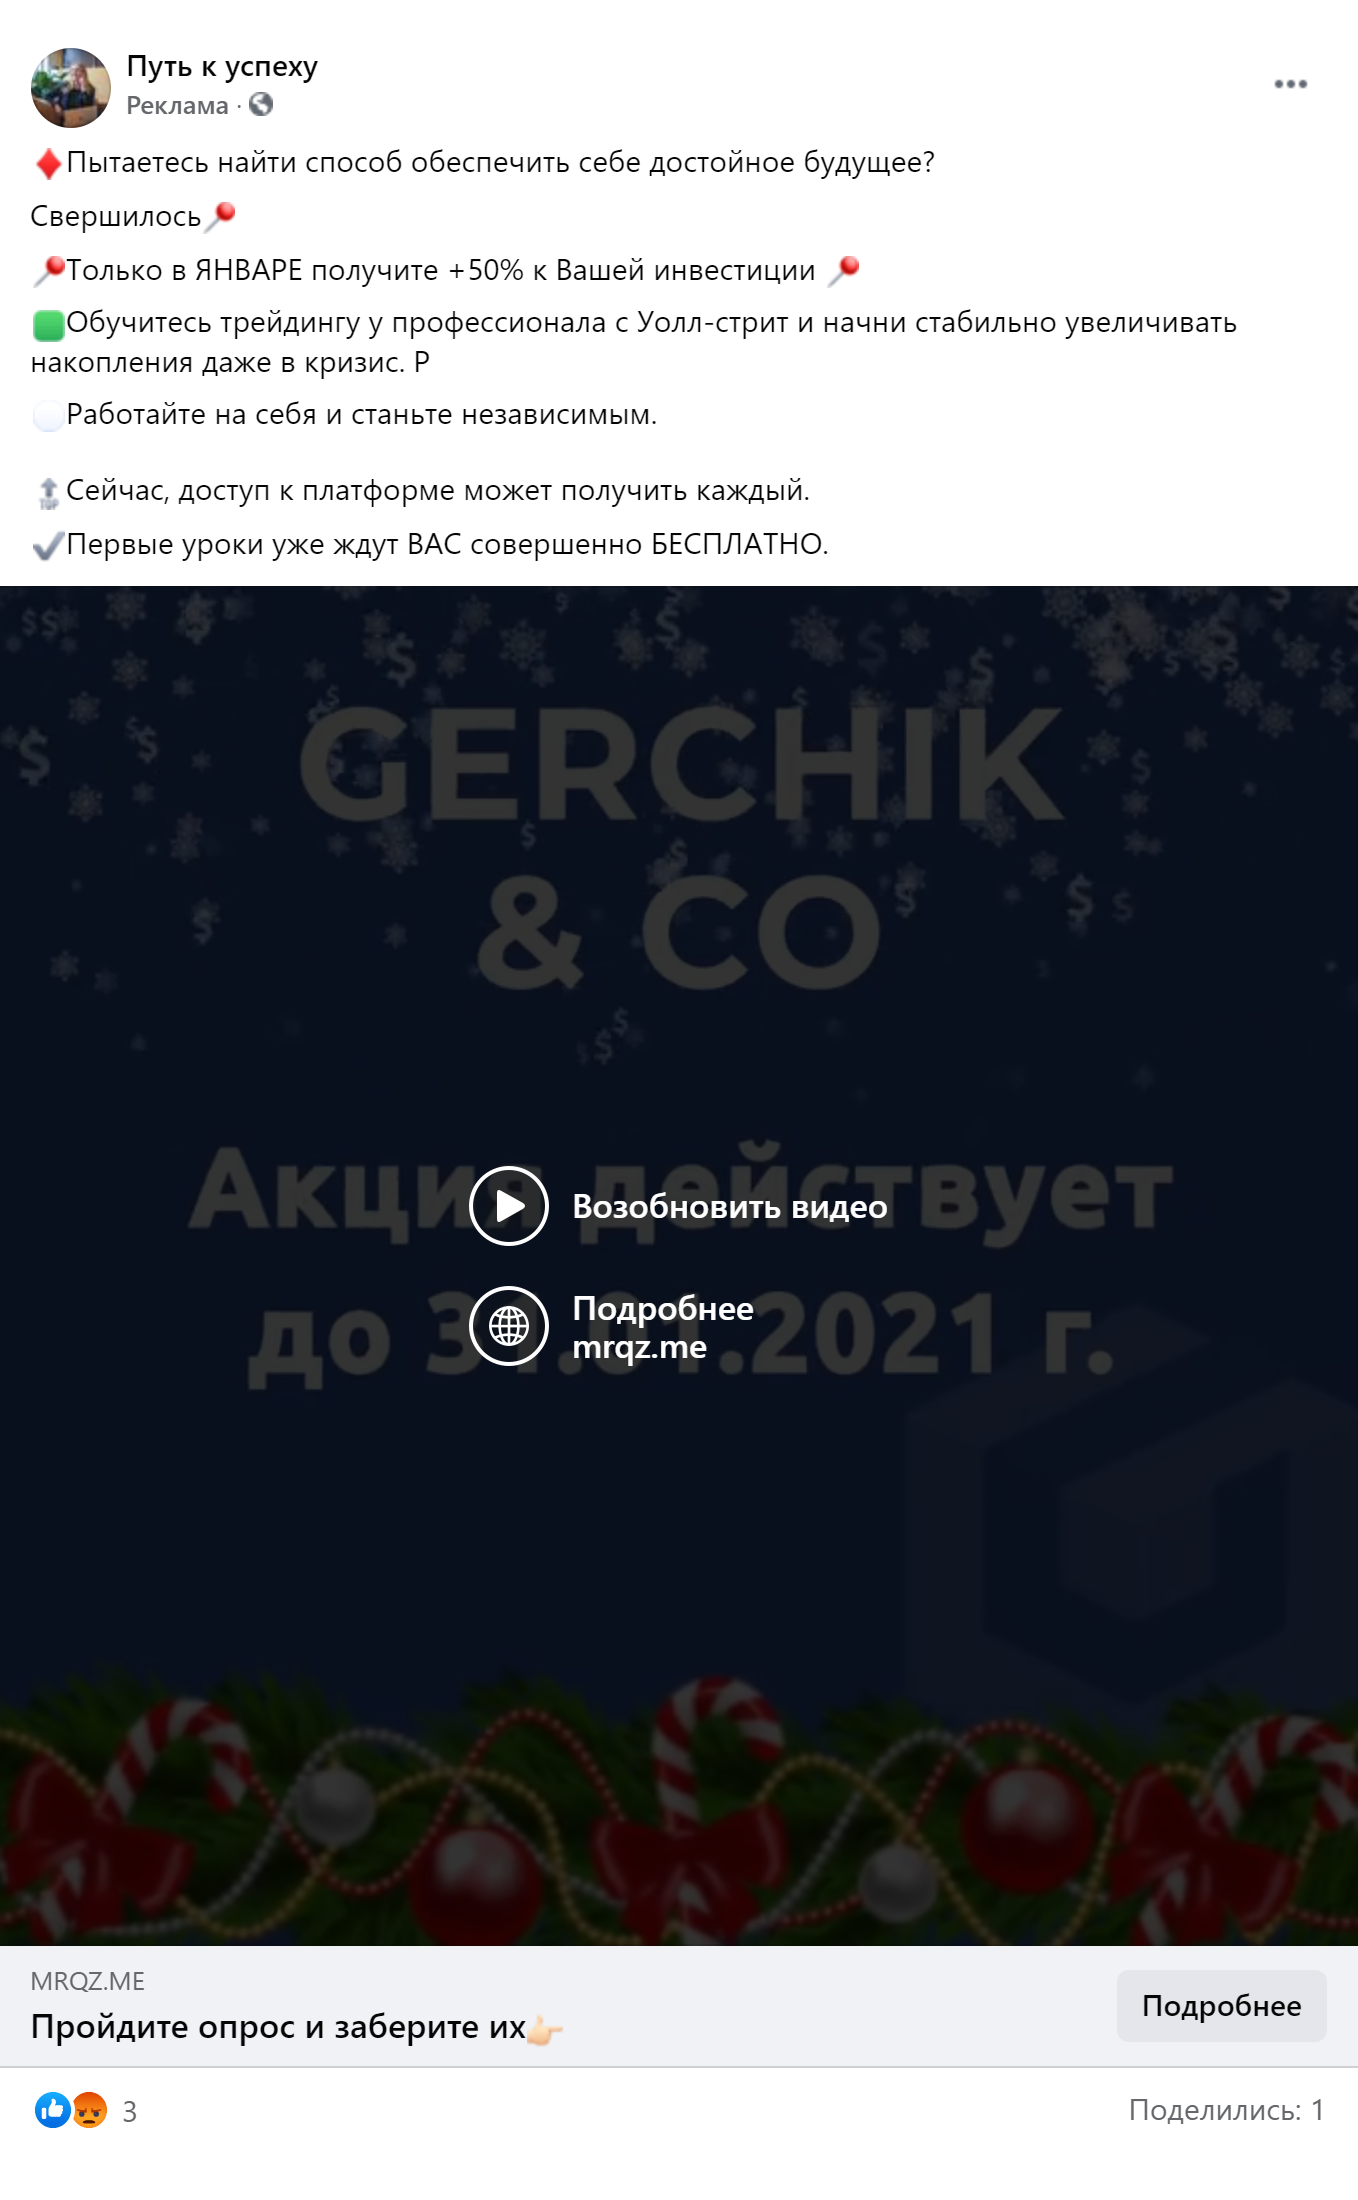 В рекламе от имени Gerchik & Co все те же 50% к депозиту, сказочные обещания и срок действия акции только до конца января